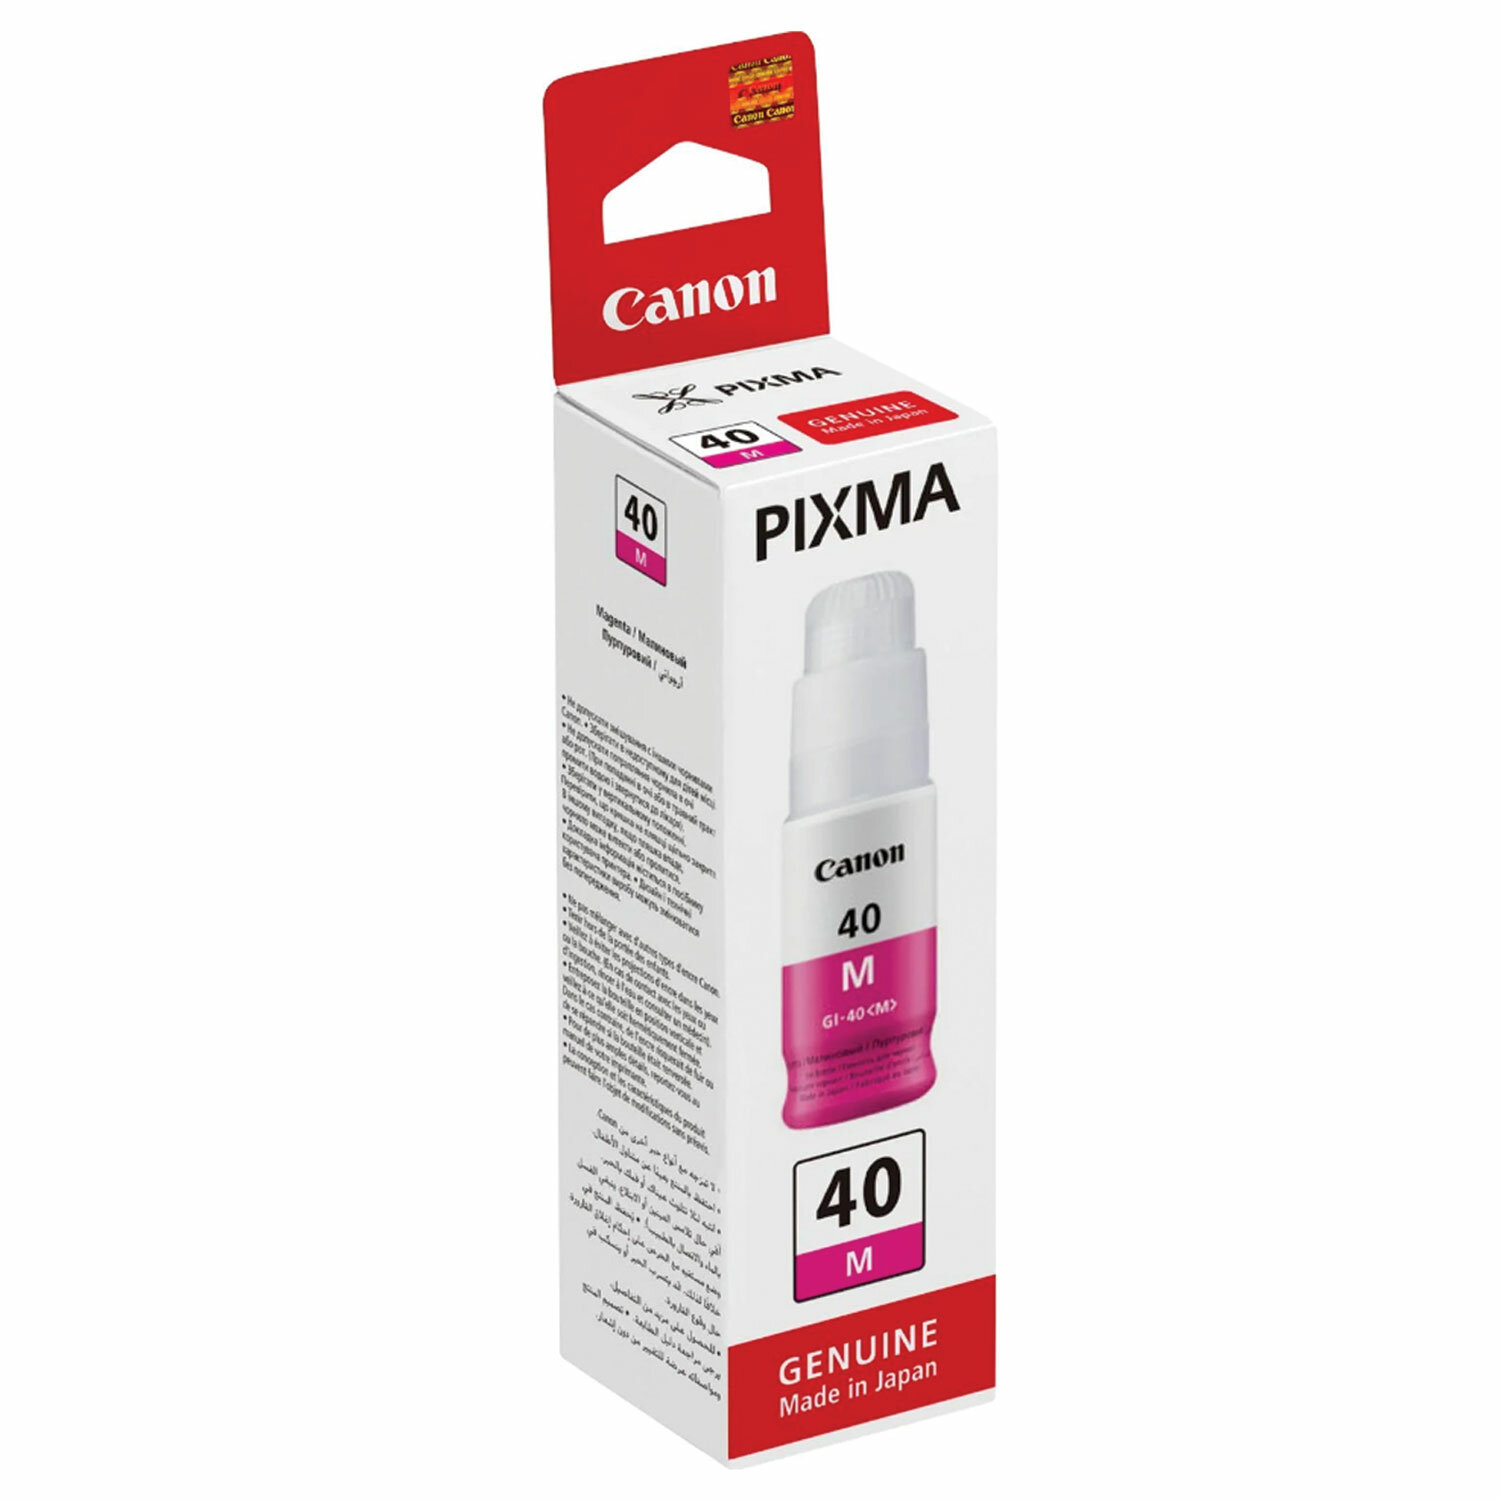 Canon pixma 40